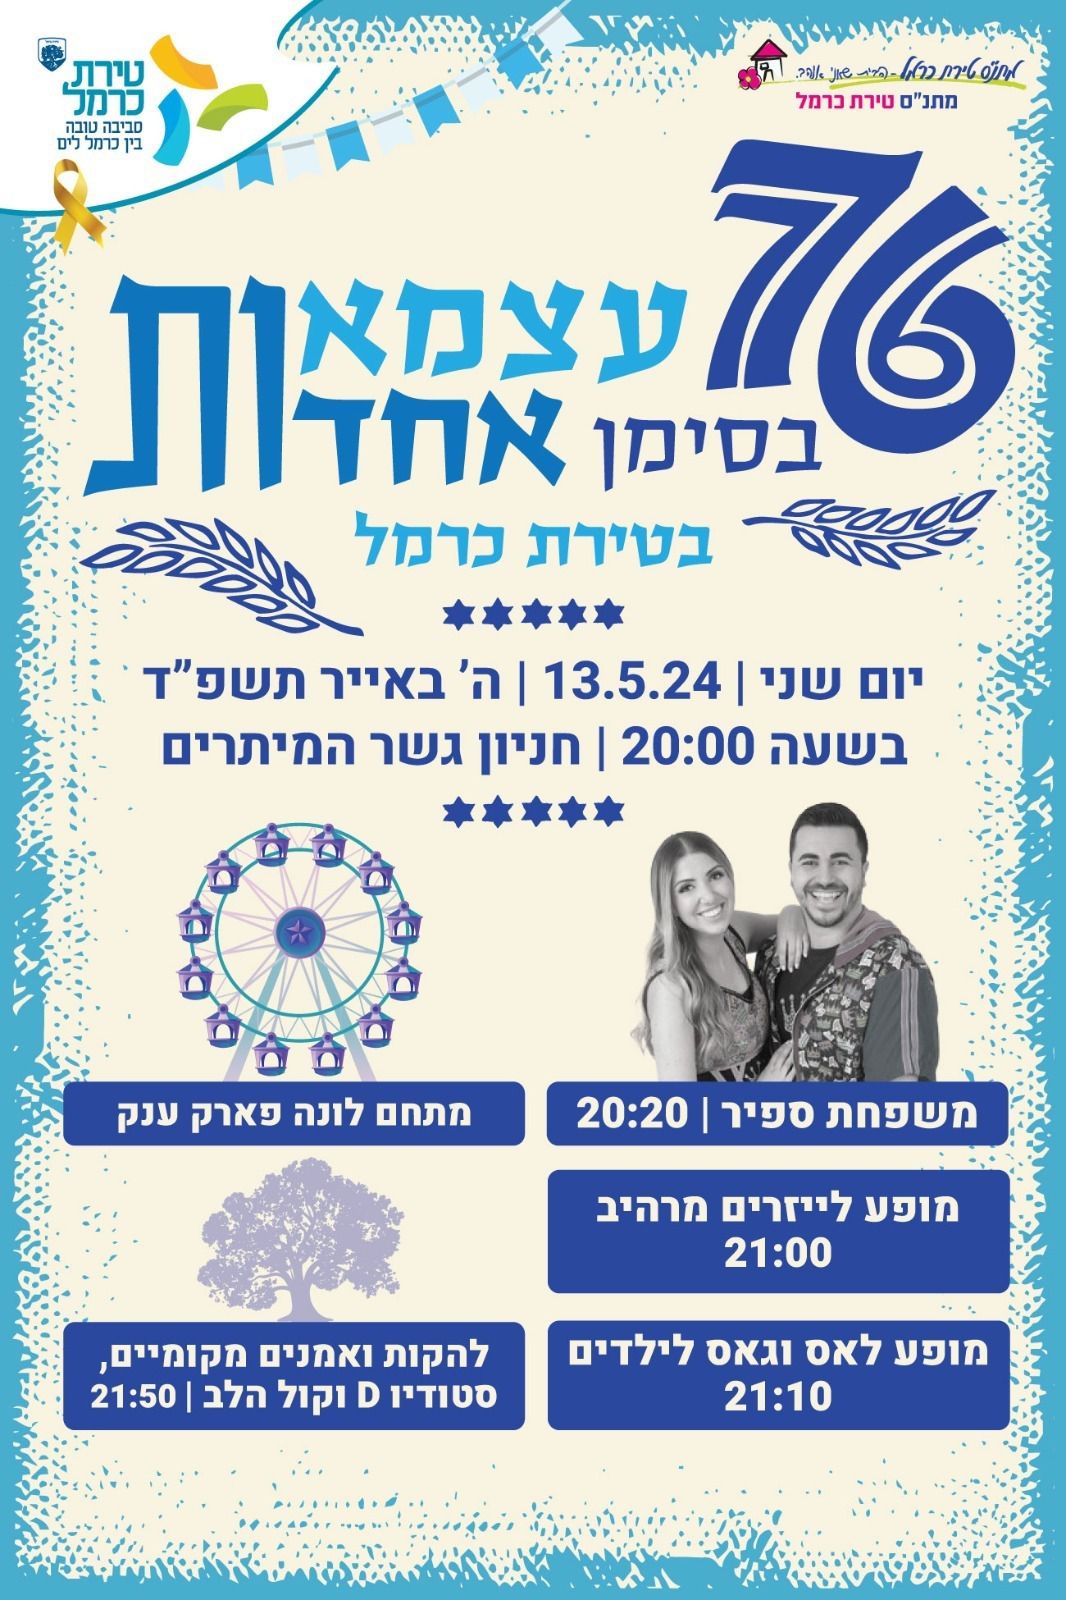 טירת כרמל מציינת את יום העצמאות ה-76 למדינת ישראל בפעילויות מגוונות לילדים ולקהילה